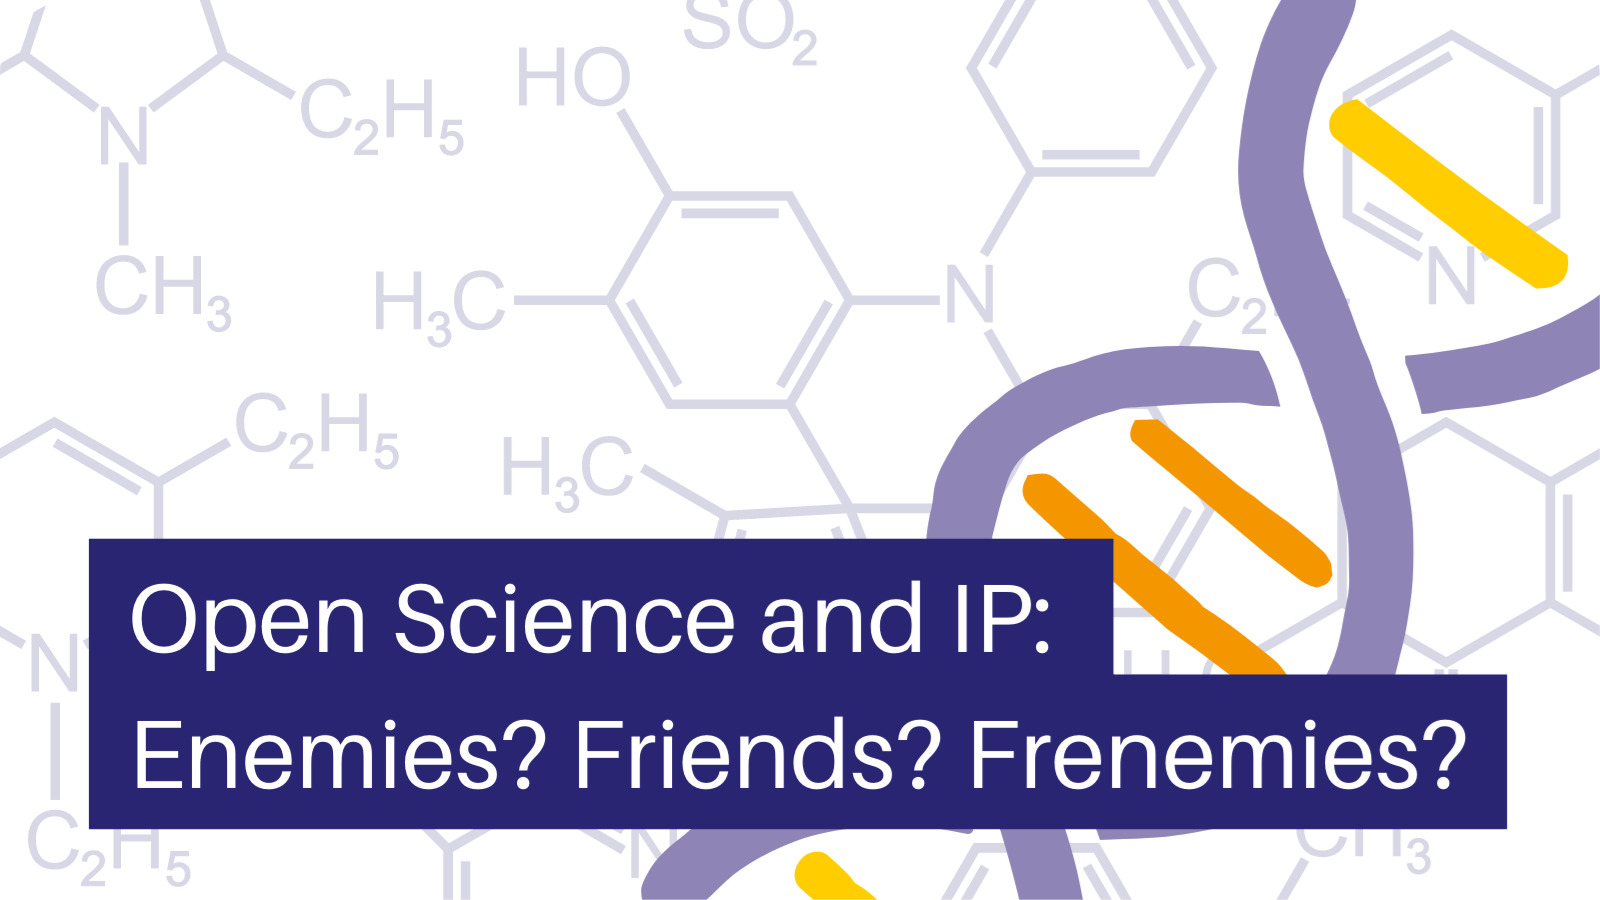 Open Science and IP: Enemies? Friends? Frenemies?